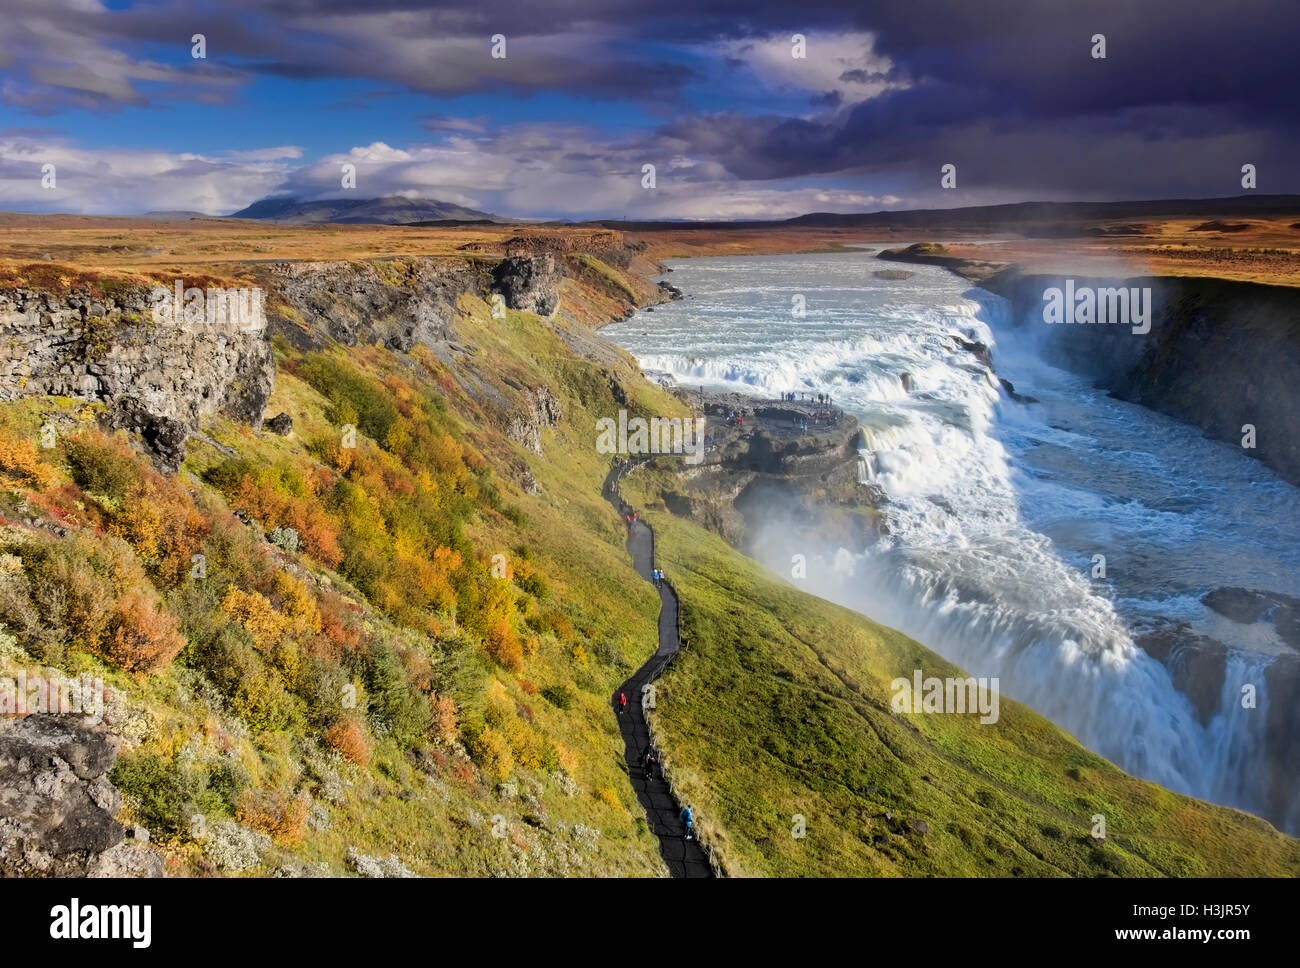 Couleurs d'automne à la cascade de Gullfoss située sur la rivière Hvítá, près de Geysir, sud-ouest de l'Islande Banque D'Images